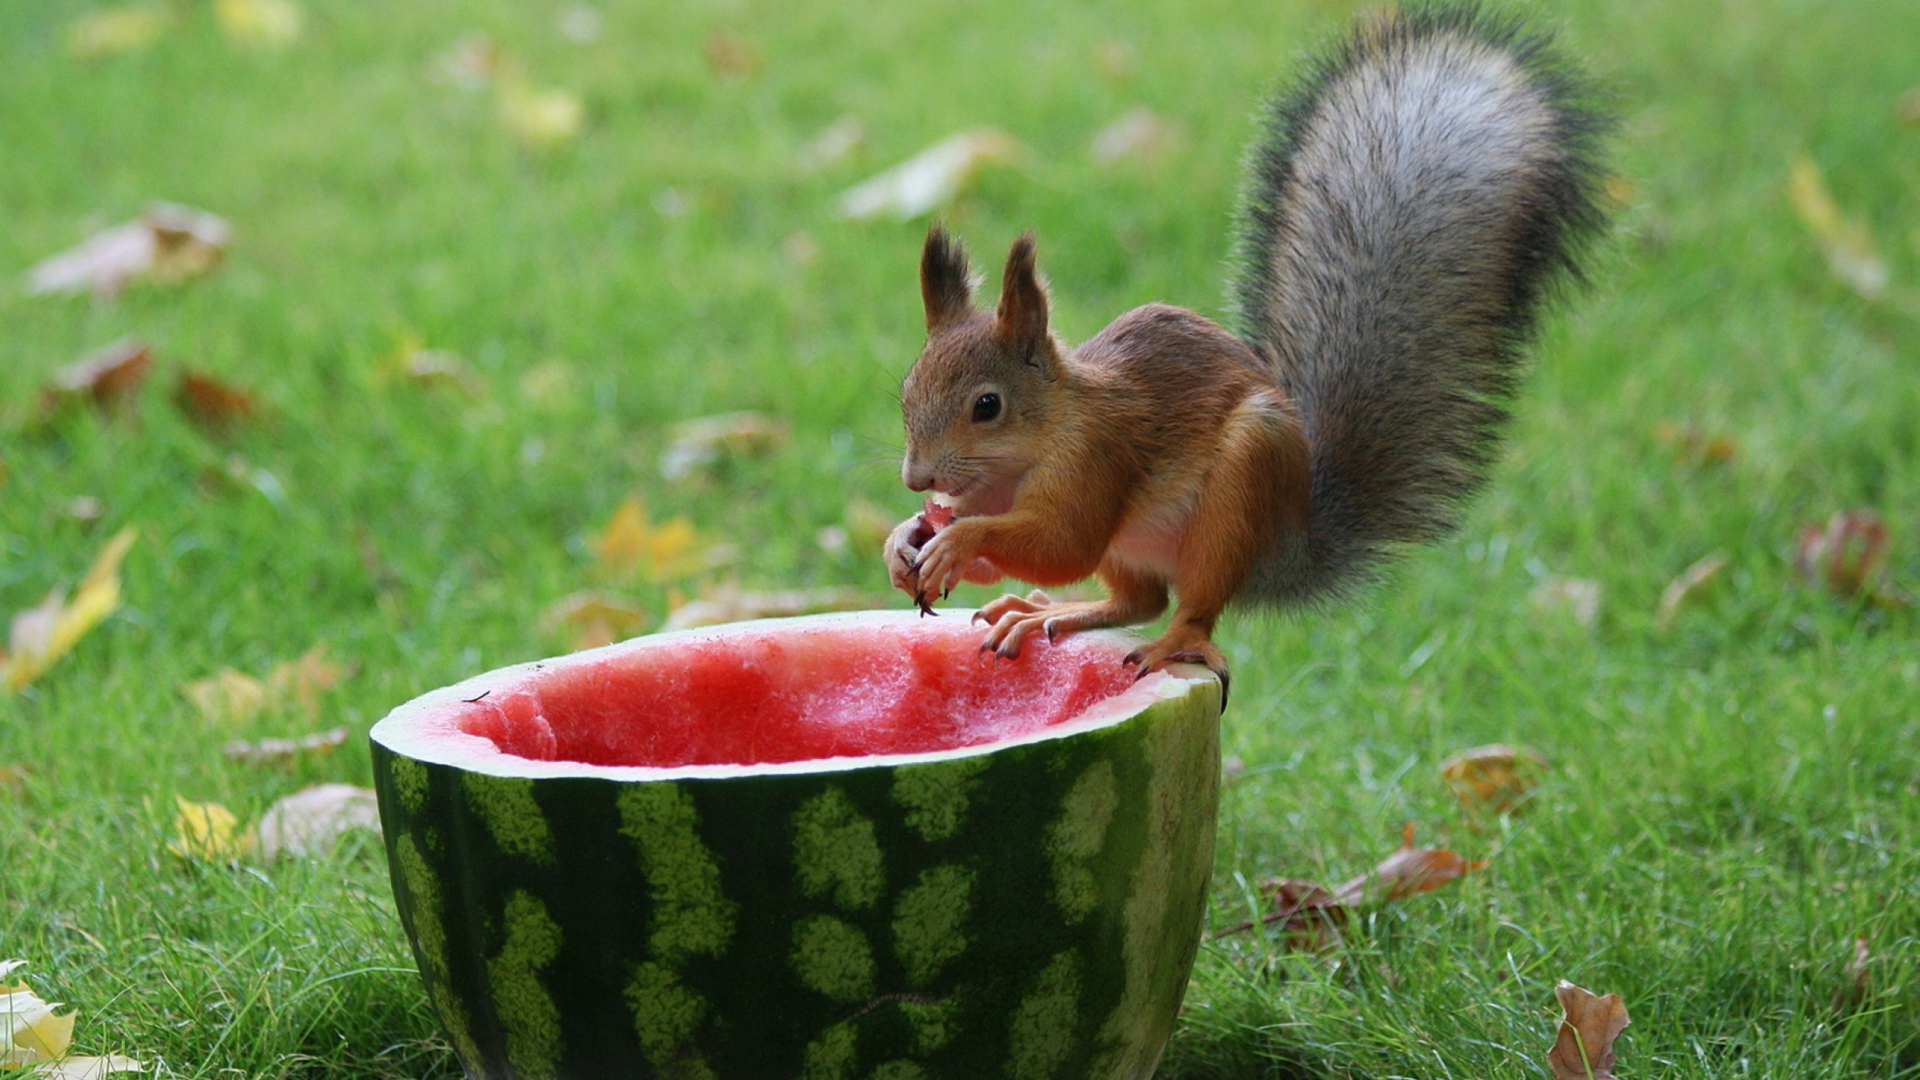 Обои Squirrel Likes Watermelon 1920x1080